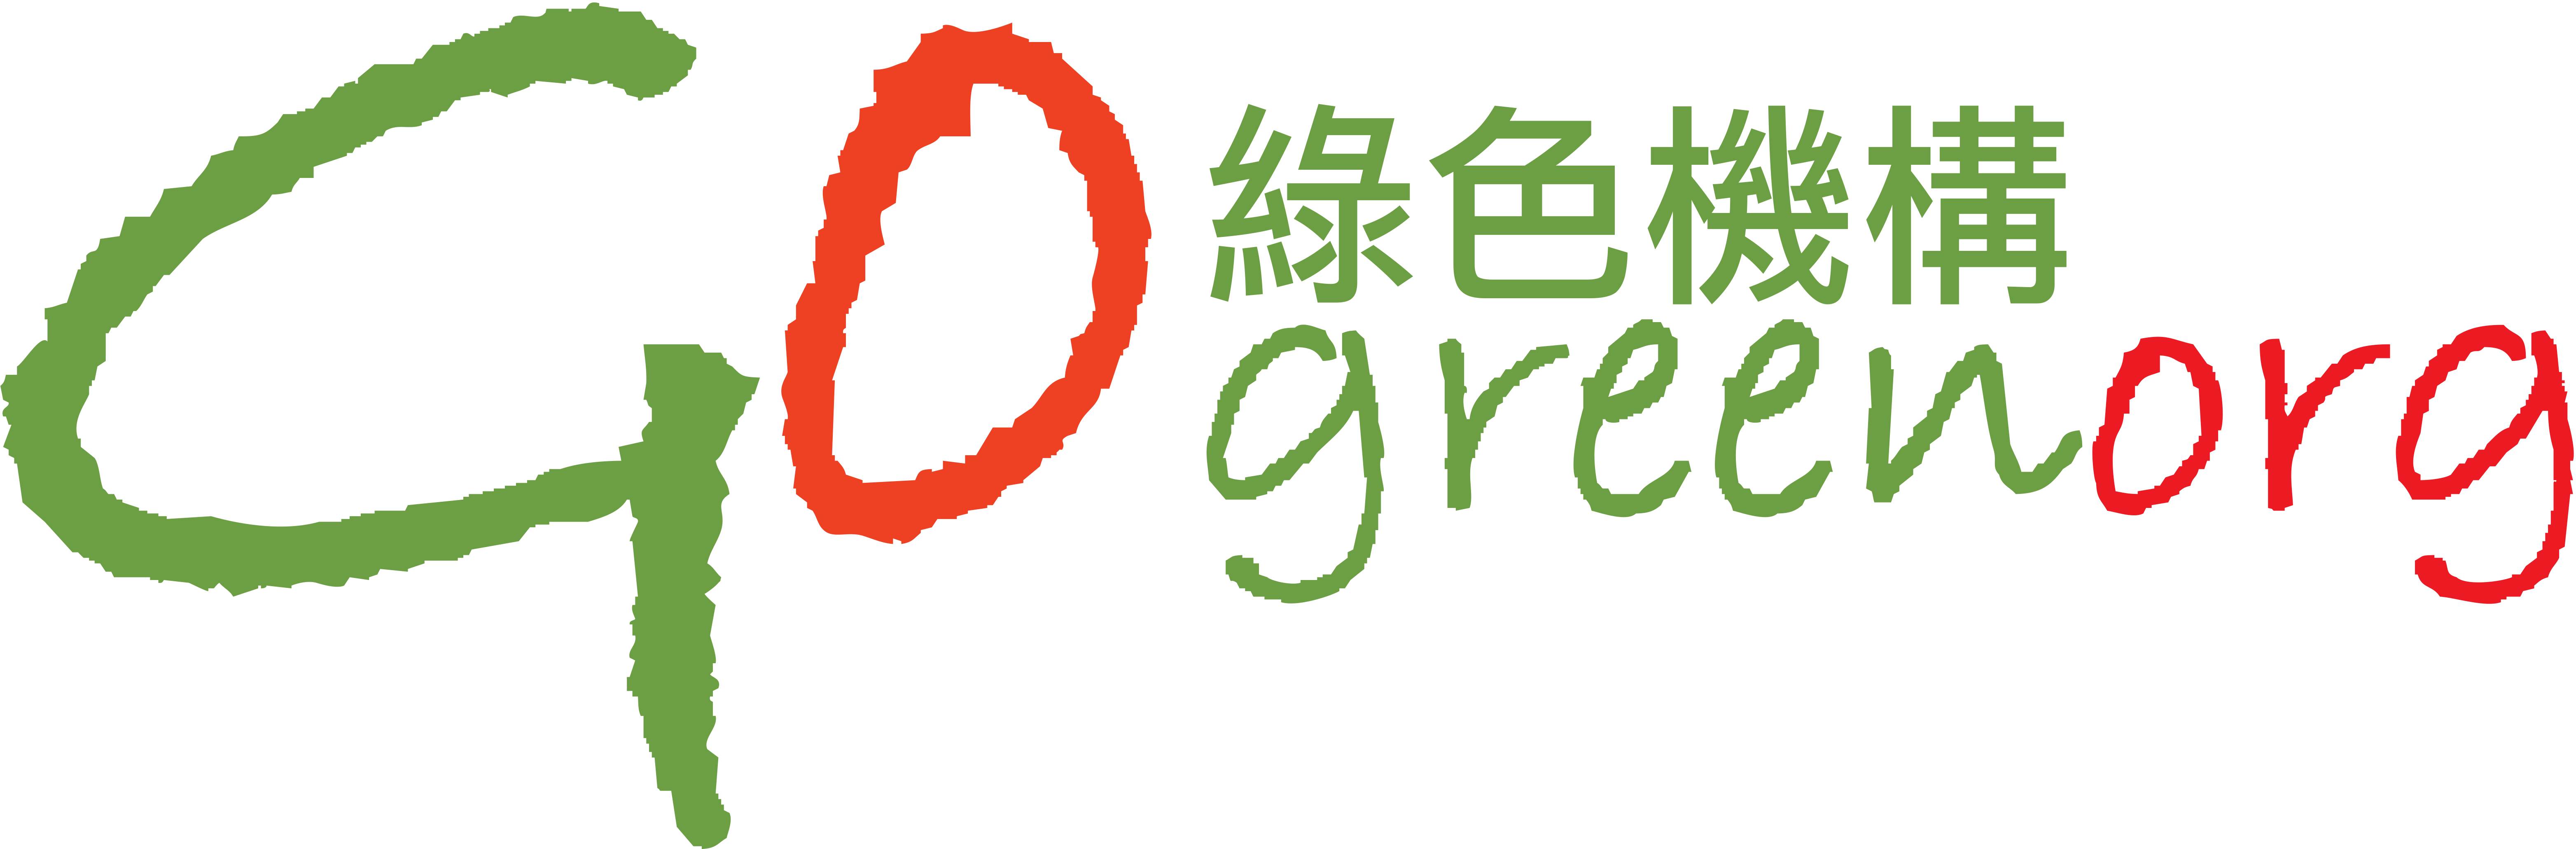 HKGO logo